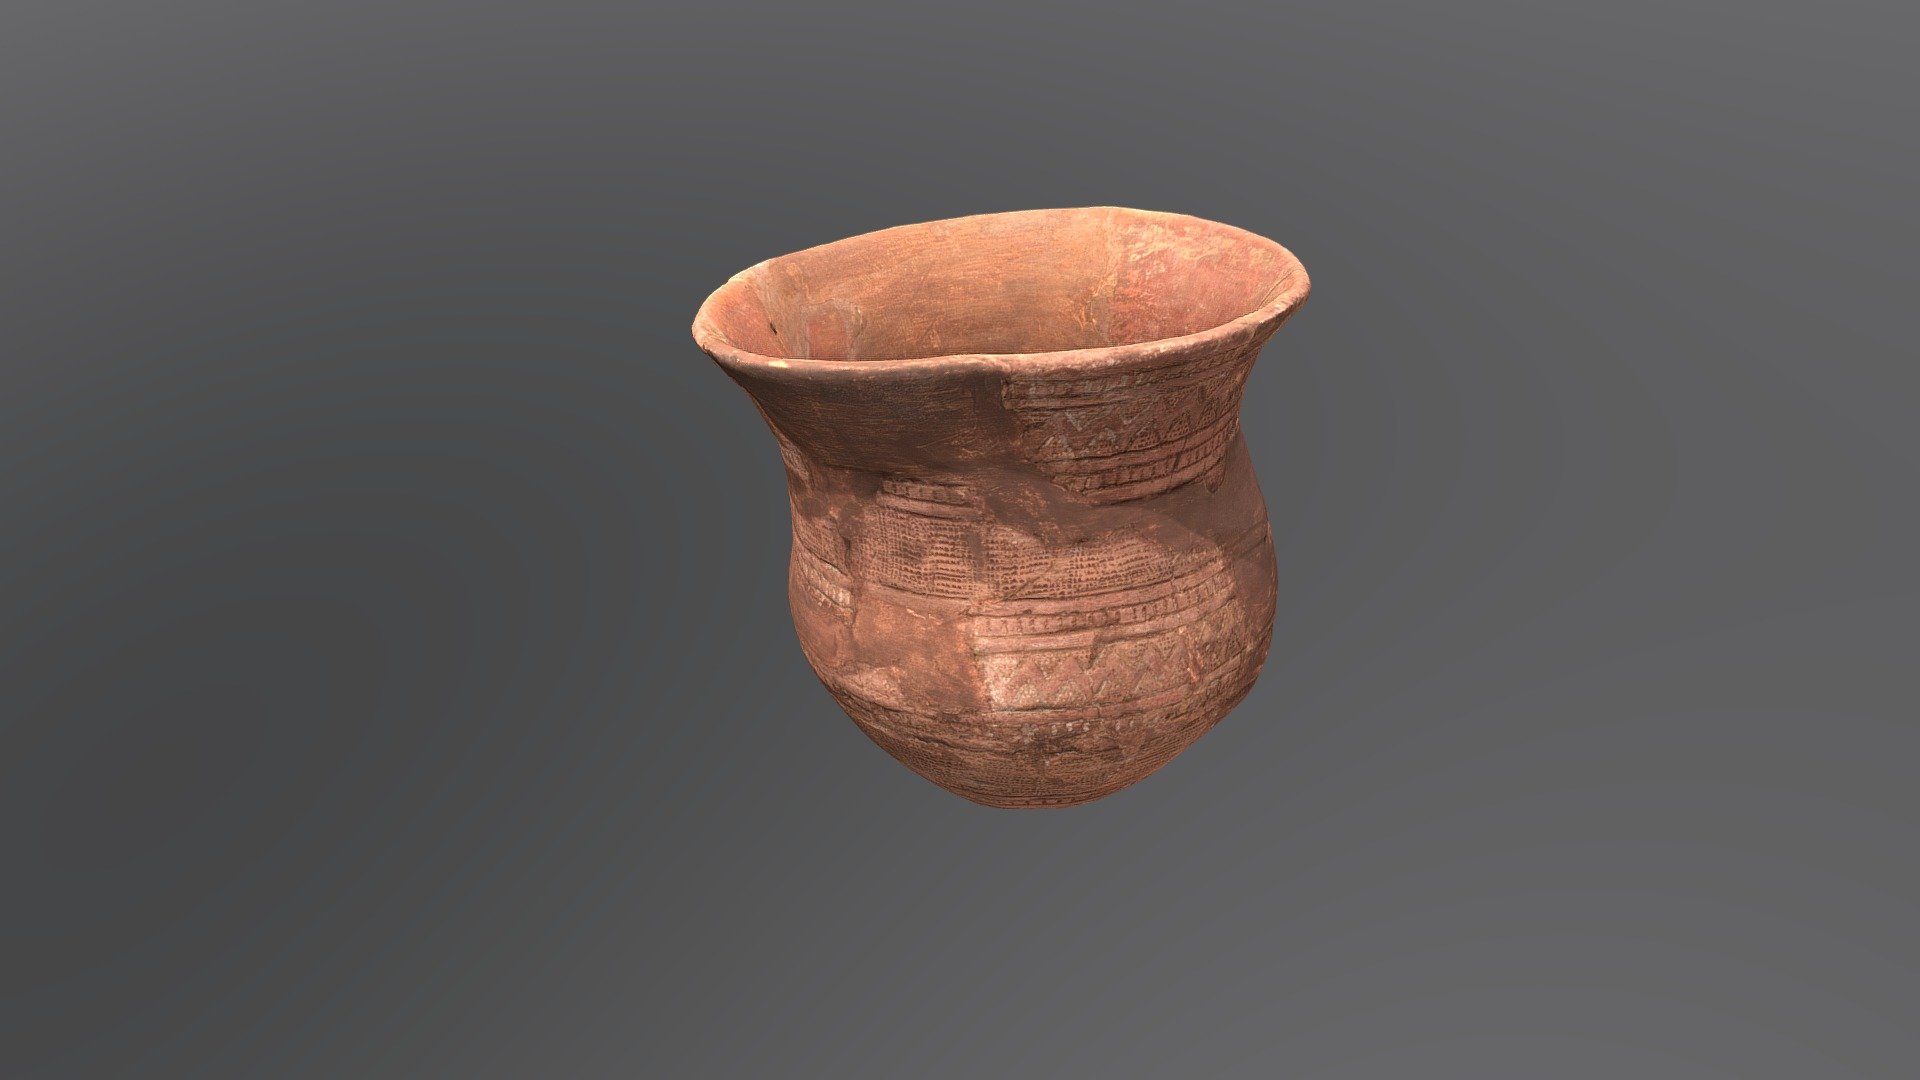 Pohár kultury zvoncovitých pohárů, 3. tisíciletí př. n. l 3d model